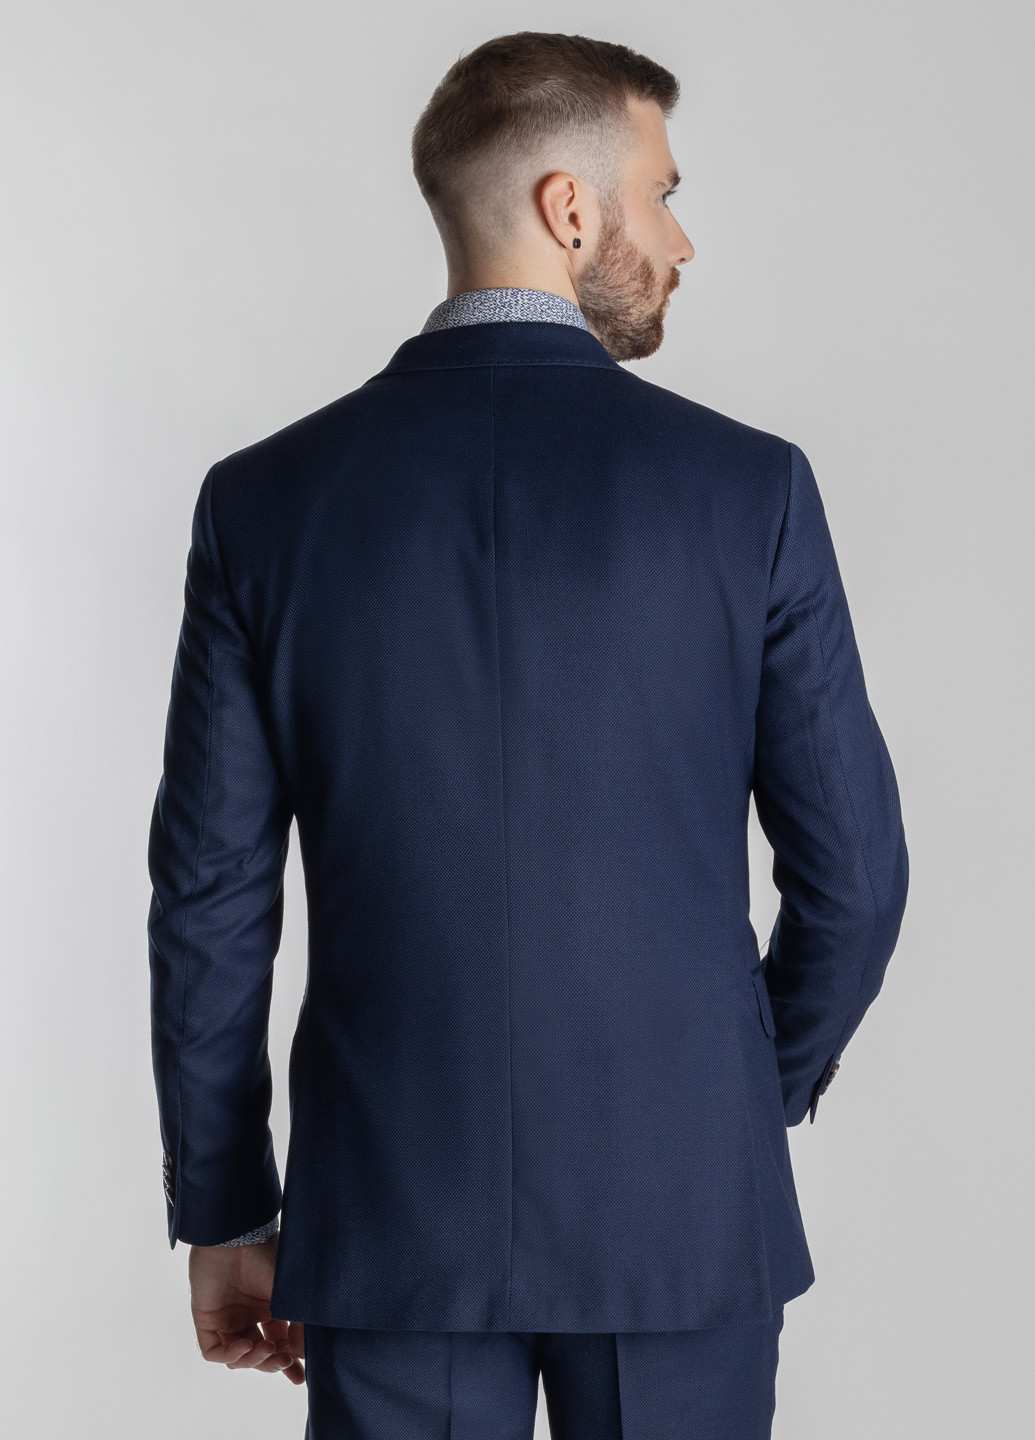 Синий демисезонный костюм мужской Arber Comfort fit 1/Роберт S